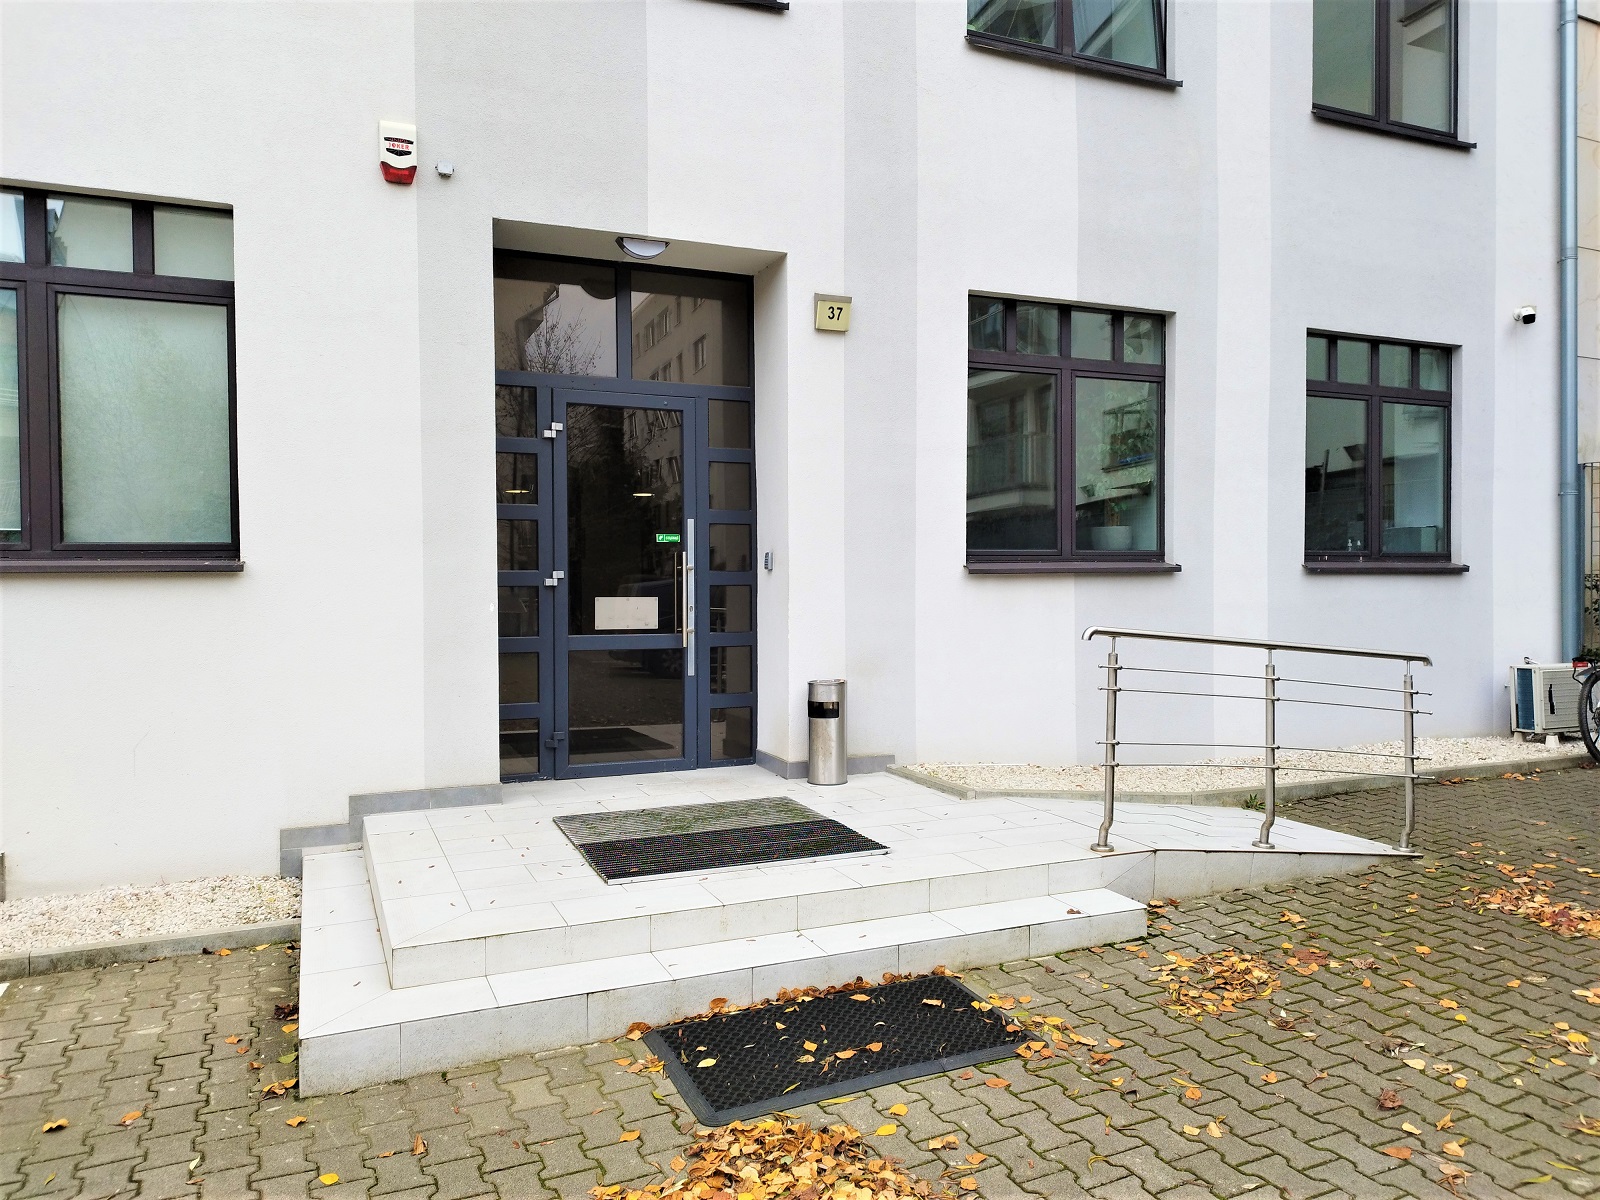 Fotografia przedstawia wejście do budynku, w którym na 2 piętrze zlokalizowane jest biuro Stowarzyszenia Metropolia Poznań. Znajduje się ono od strony dziedzińca parkingowego i wyposażone zostało w rampę najazdową w celu umożliwienia dostępności obiektu dla osób z niepełnosprawnością ruchu, ze względu na widoczne występowanie schodów dwustopniowych. Drzwi ukazane na fotografii otworzyć można jedynie za pomocą kodu, który wpisywany jest poprzez użycie czytnika zamontowanego na elewacji budynku na wysokości ok. 100 cm.